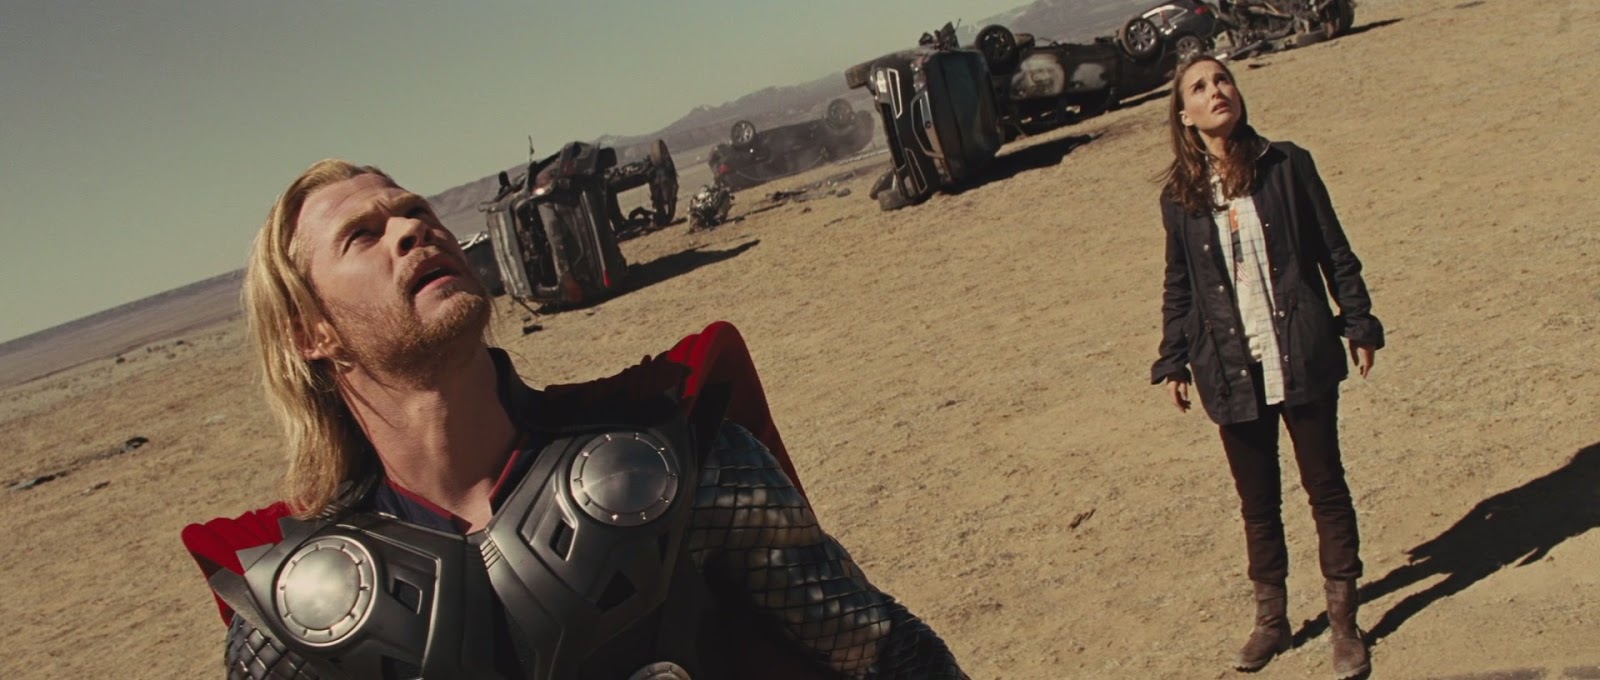 Review dan Sinopsis Film Thor (2011) - Nama Film